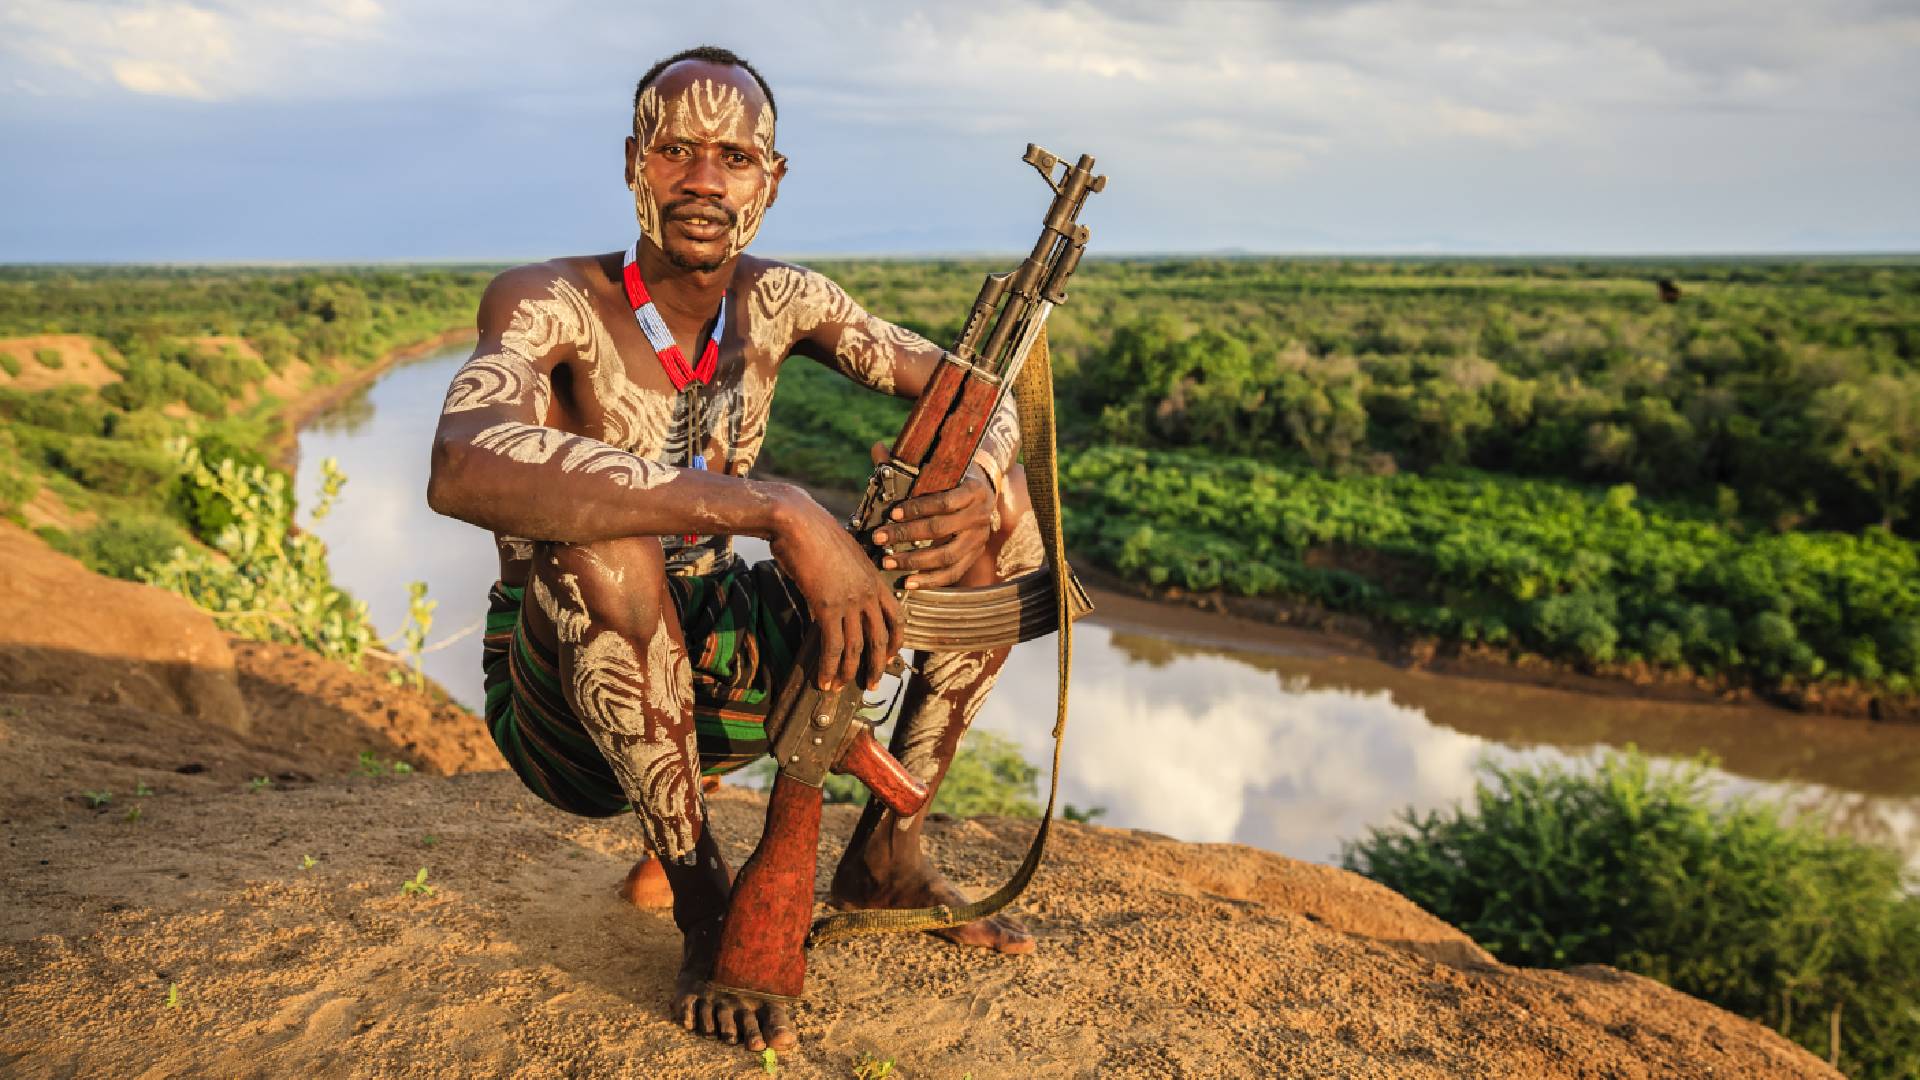 Kmen Karo se svými 400 lidmi patří mezi nejmenší etnika, které žijí v povodí řeky Omo v Etiopii